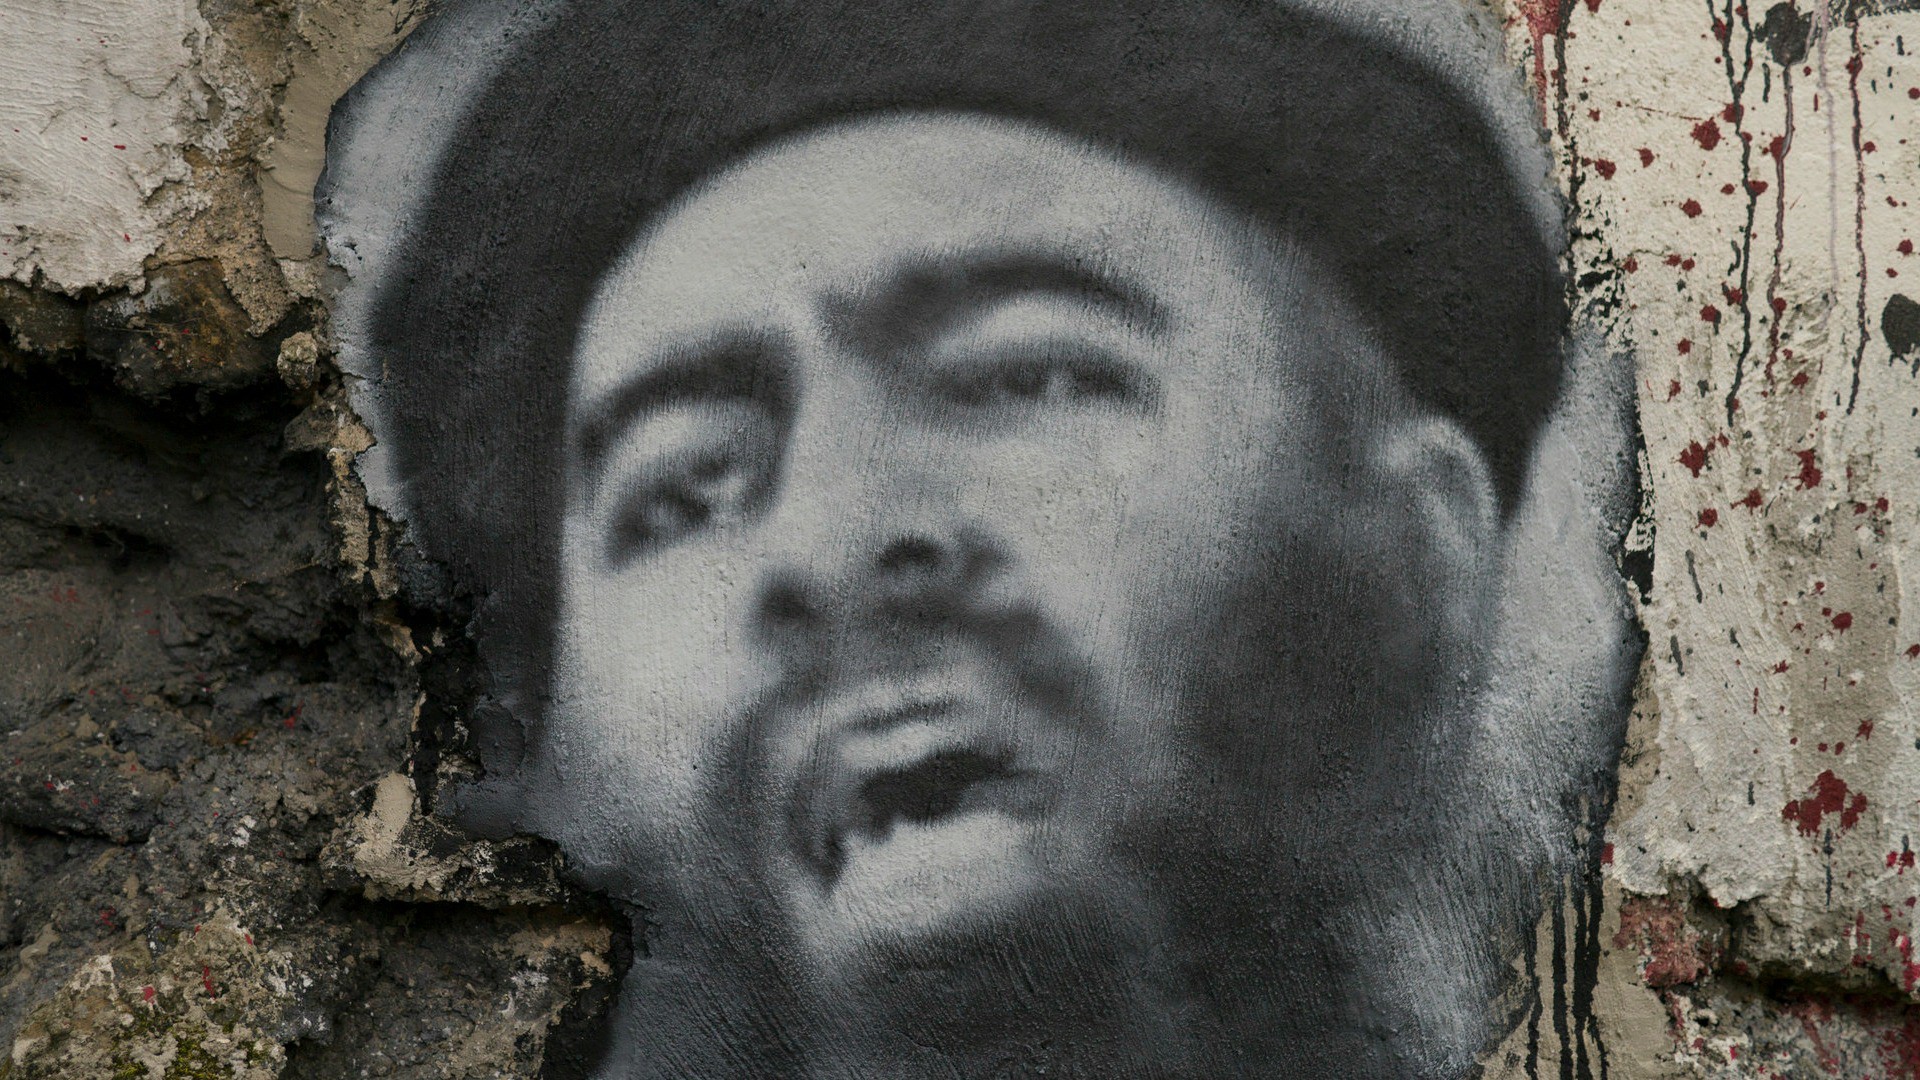 Abou Bakr al Bagdadi, le chef de l'Etat islamique, ici représenté sur un mur (Photo:Thierry Ehrmann/Flickr/CC BY 2.0)